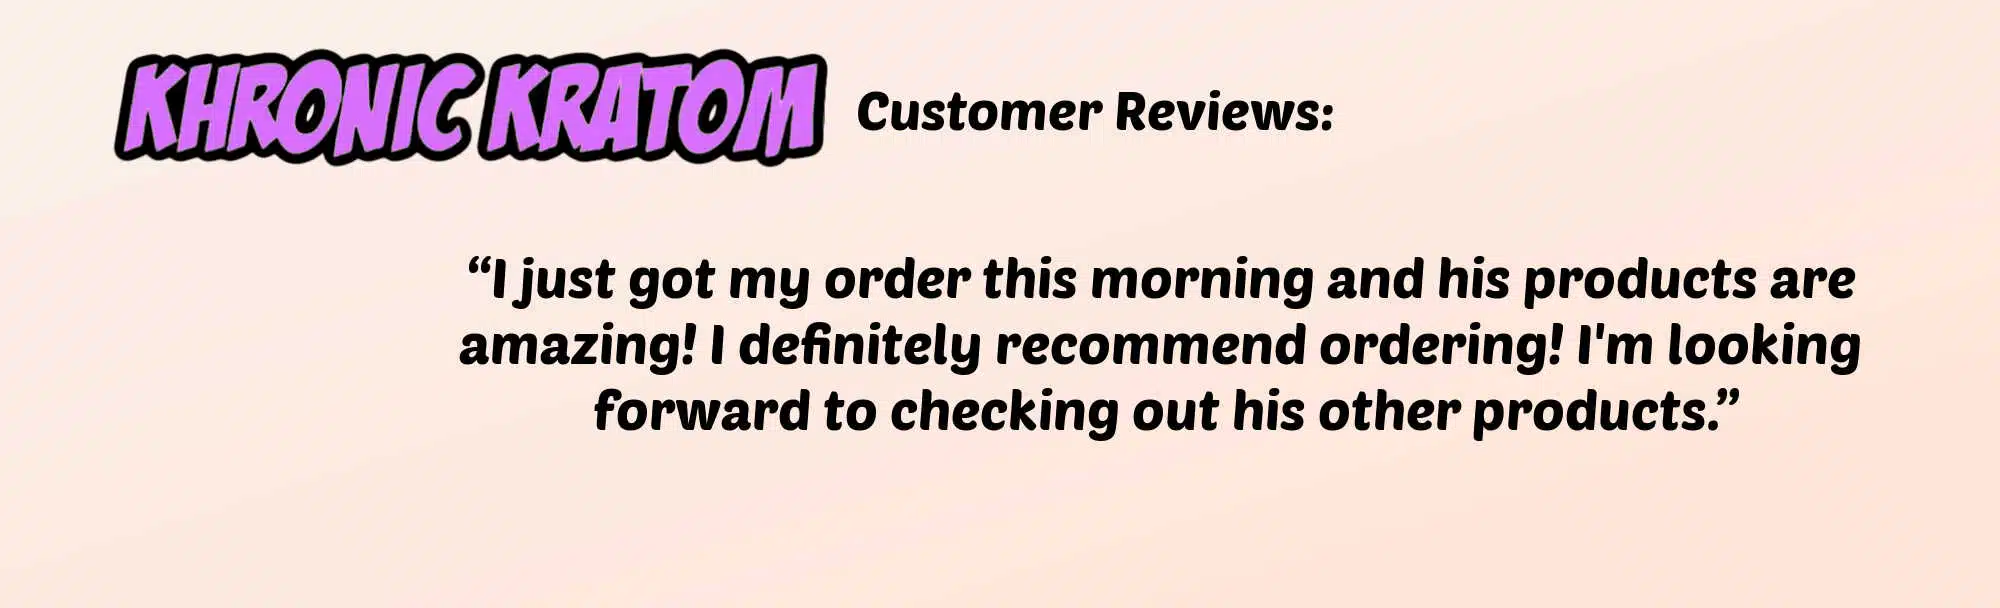 Khronic kratom customer reviews